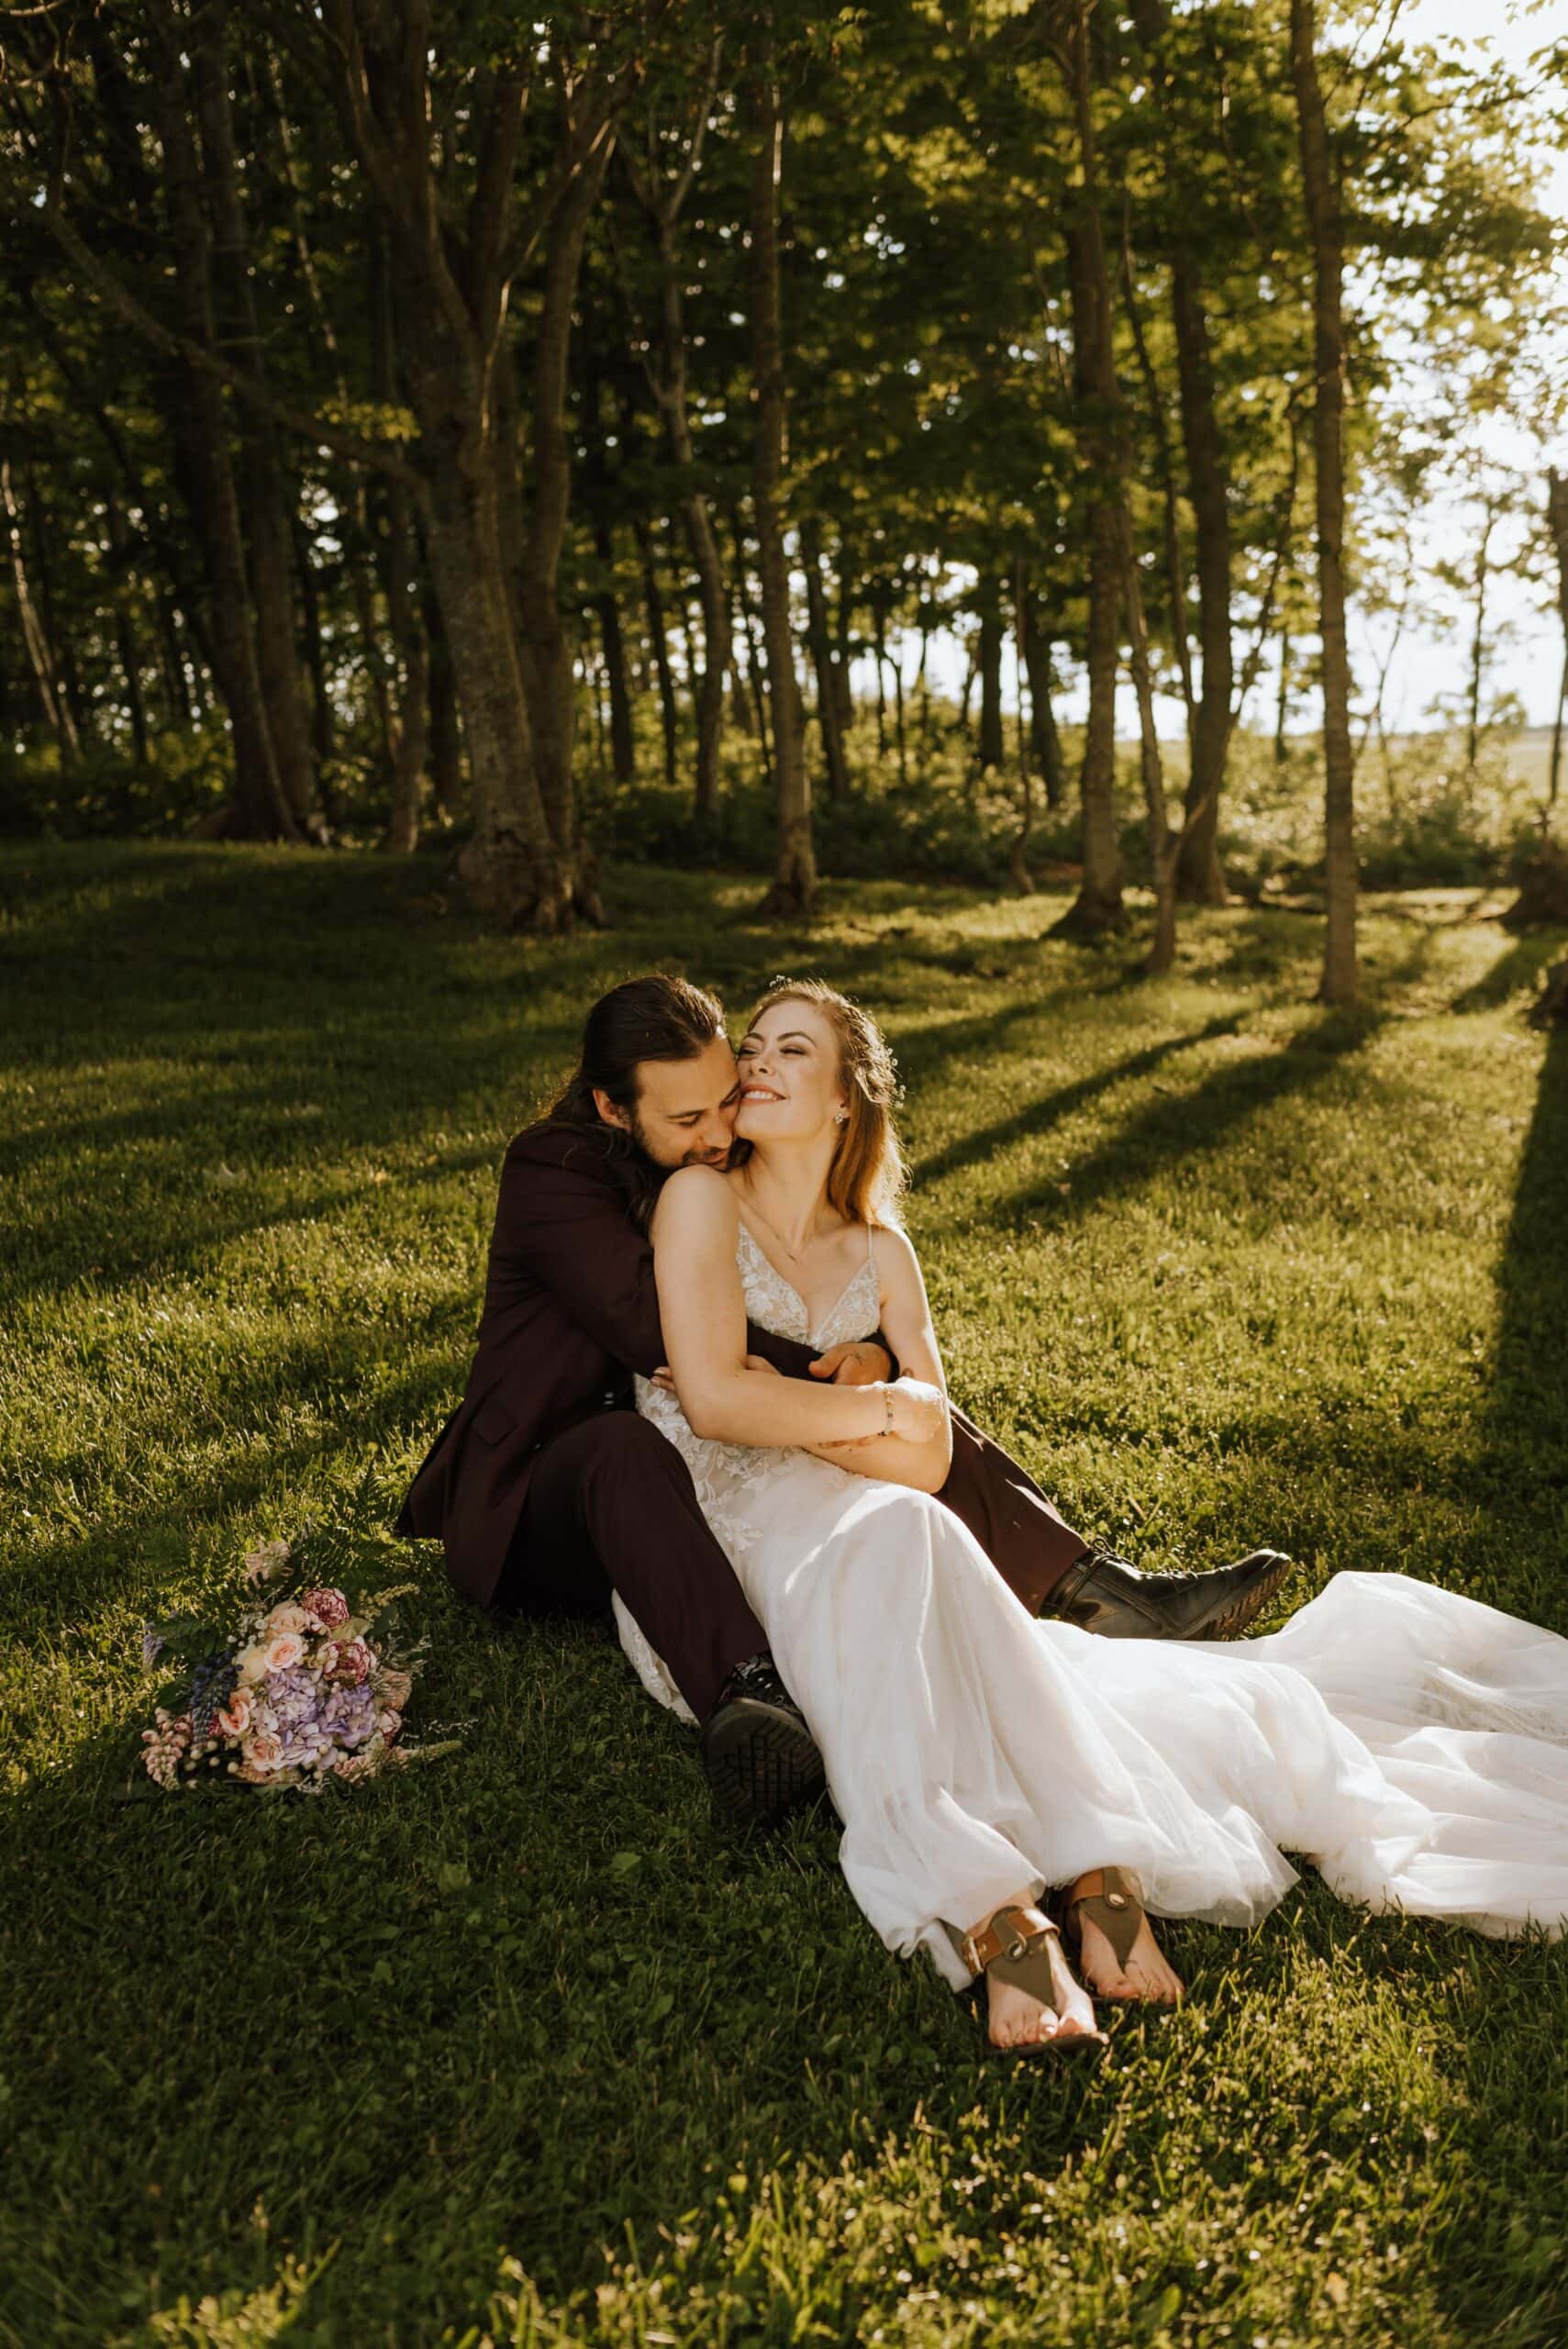 PEI wedding photography - Michaela Bell Photography